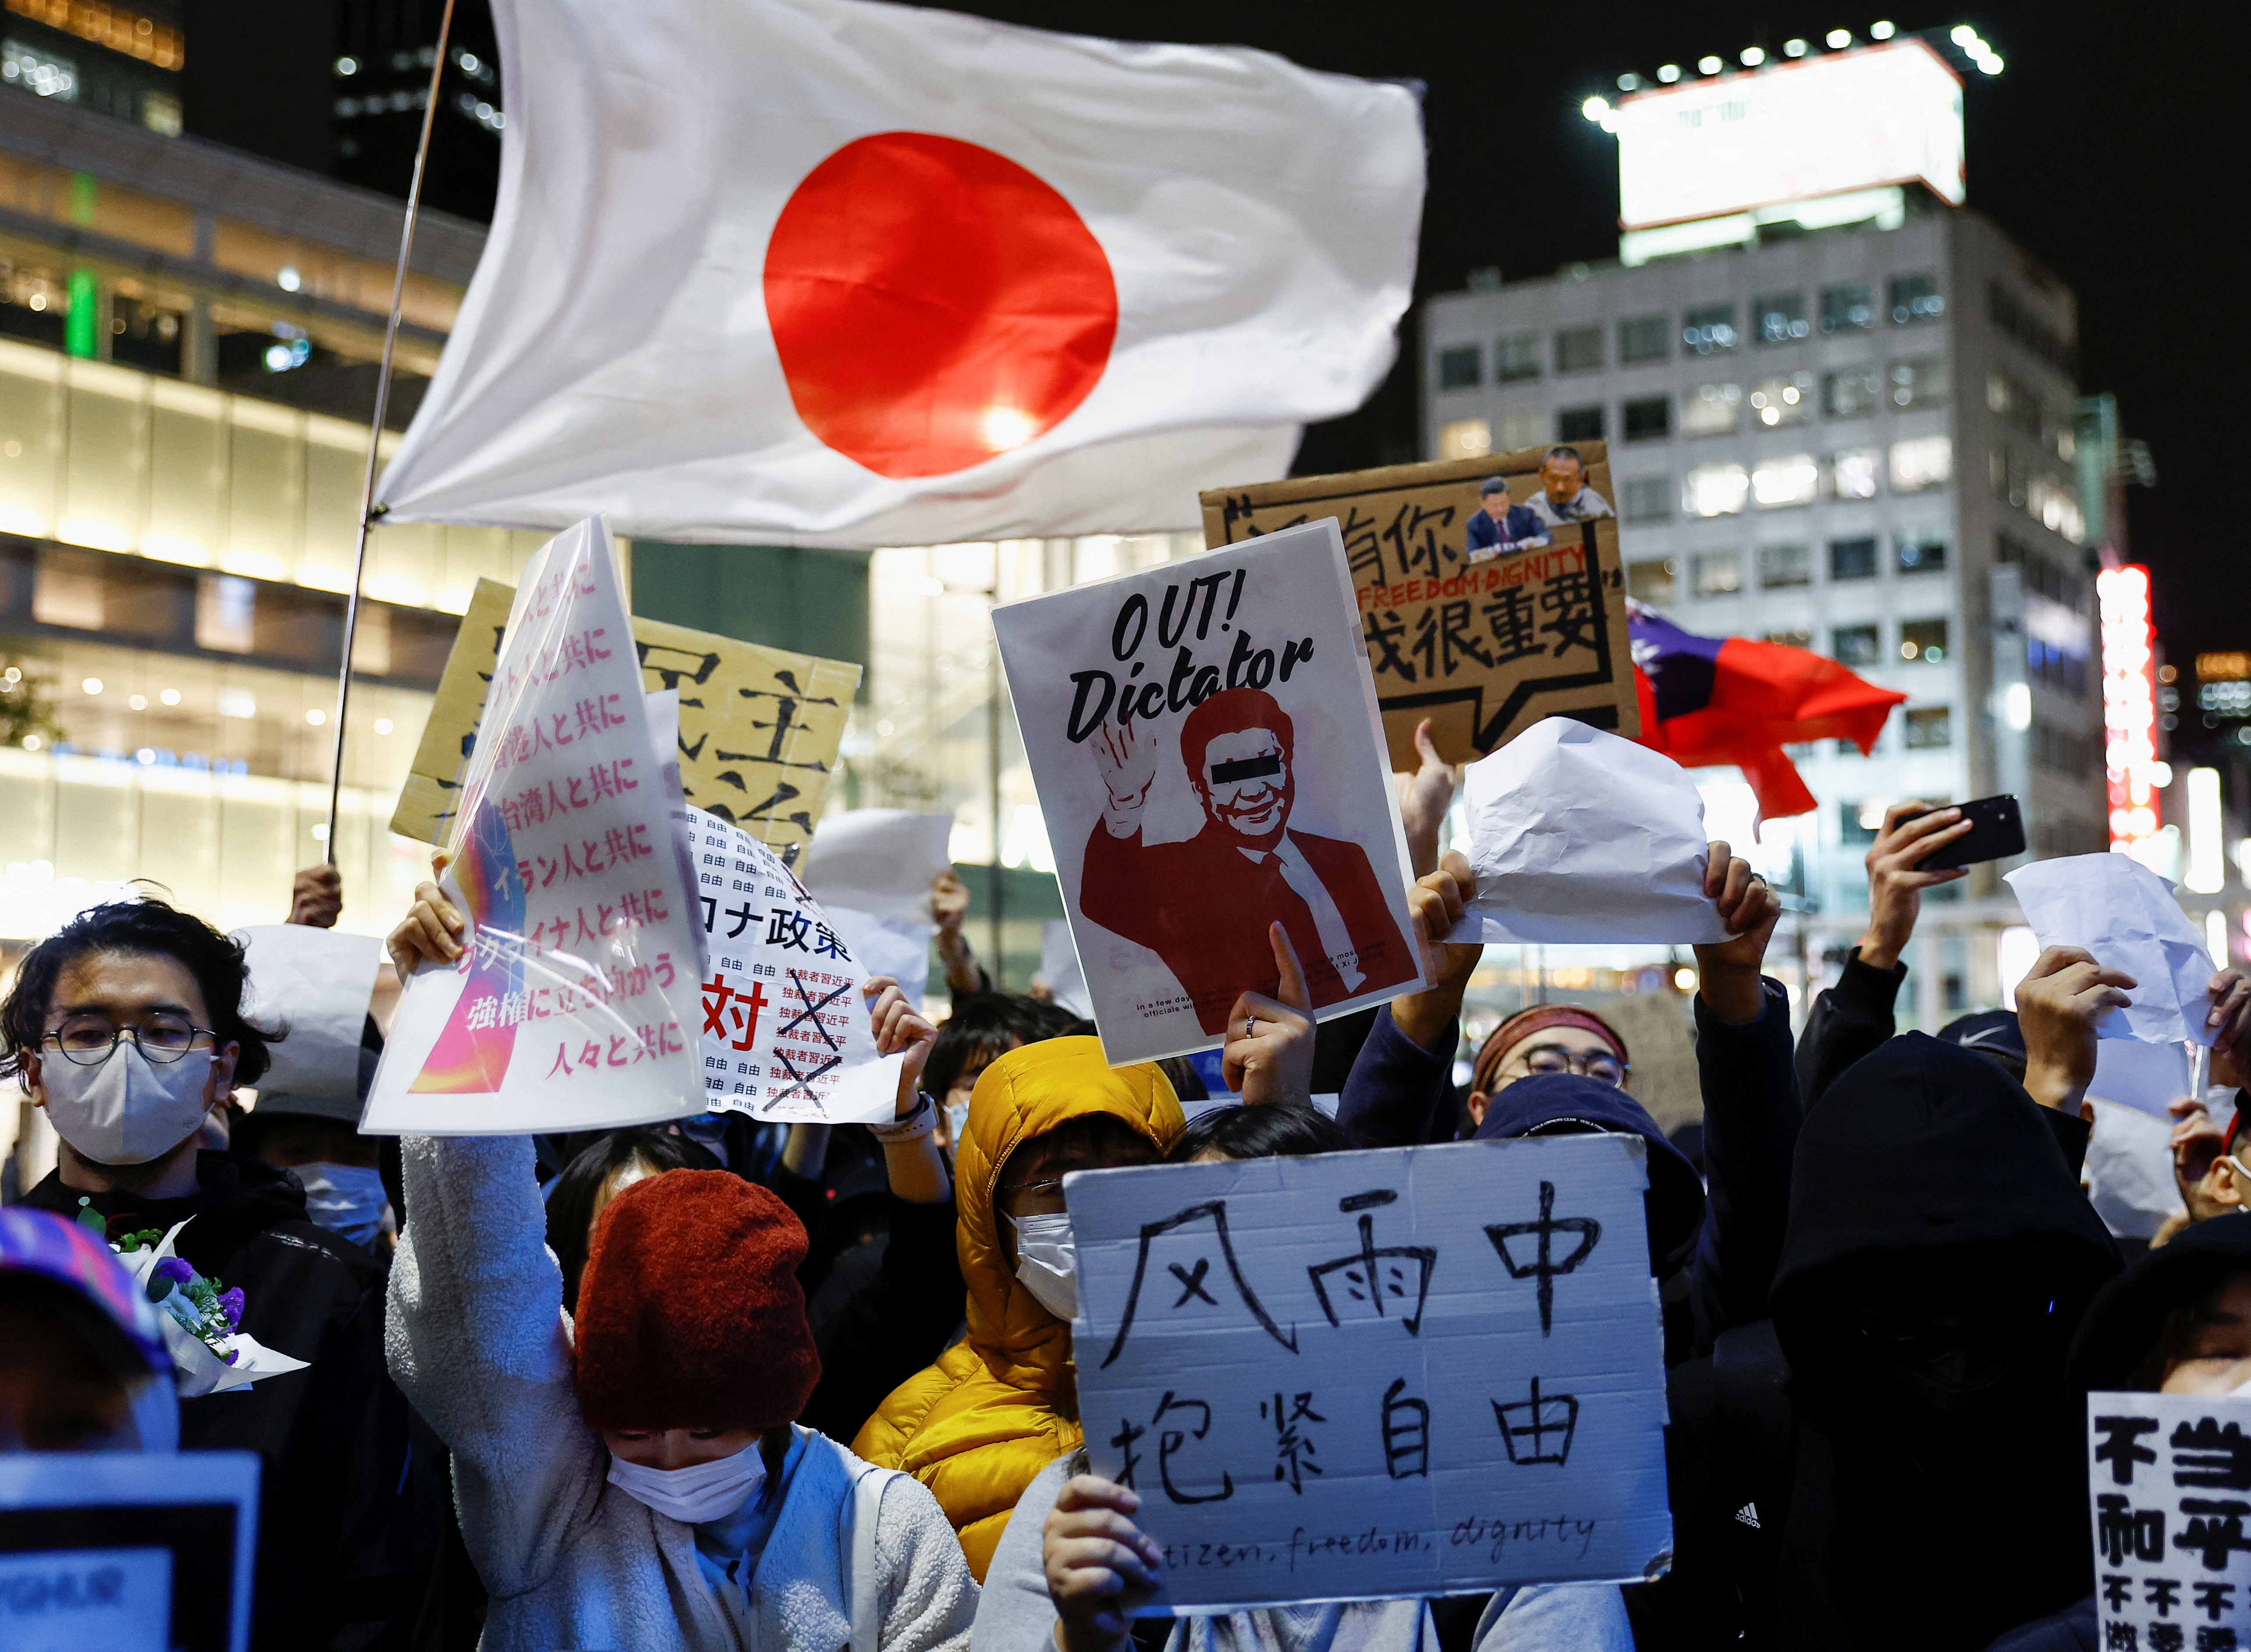 Los manifestantes sostienen pancartas durante una protesta solidaria contra los bloqueos de China por el COVID-19, en Tokio, Japón, el 30 de noviembre de 2022. REUTERS/Kim Kyung-Hoon